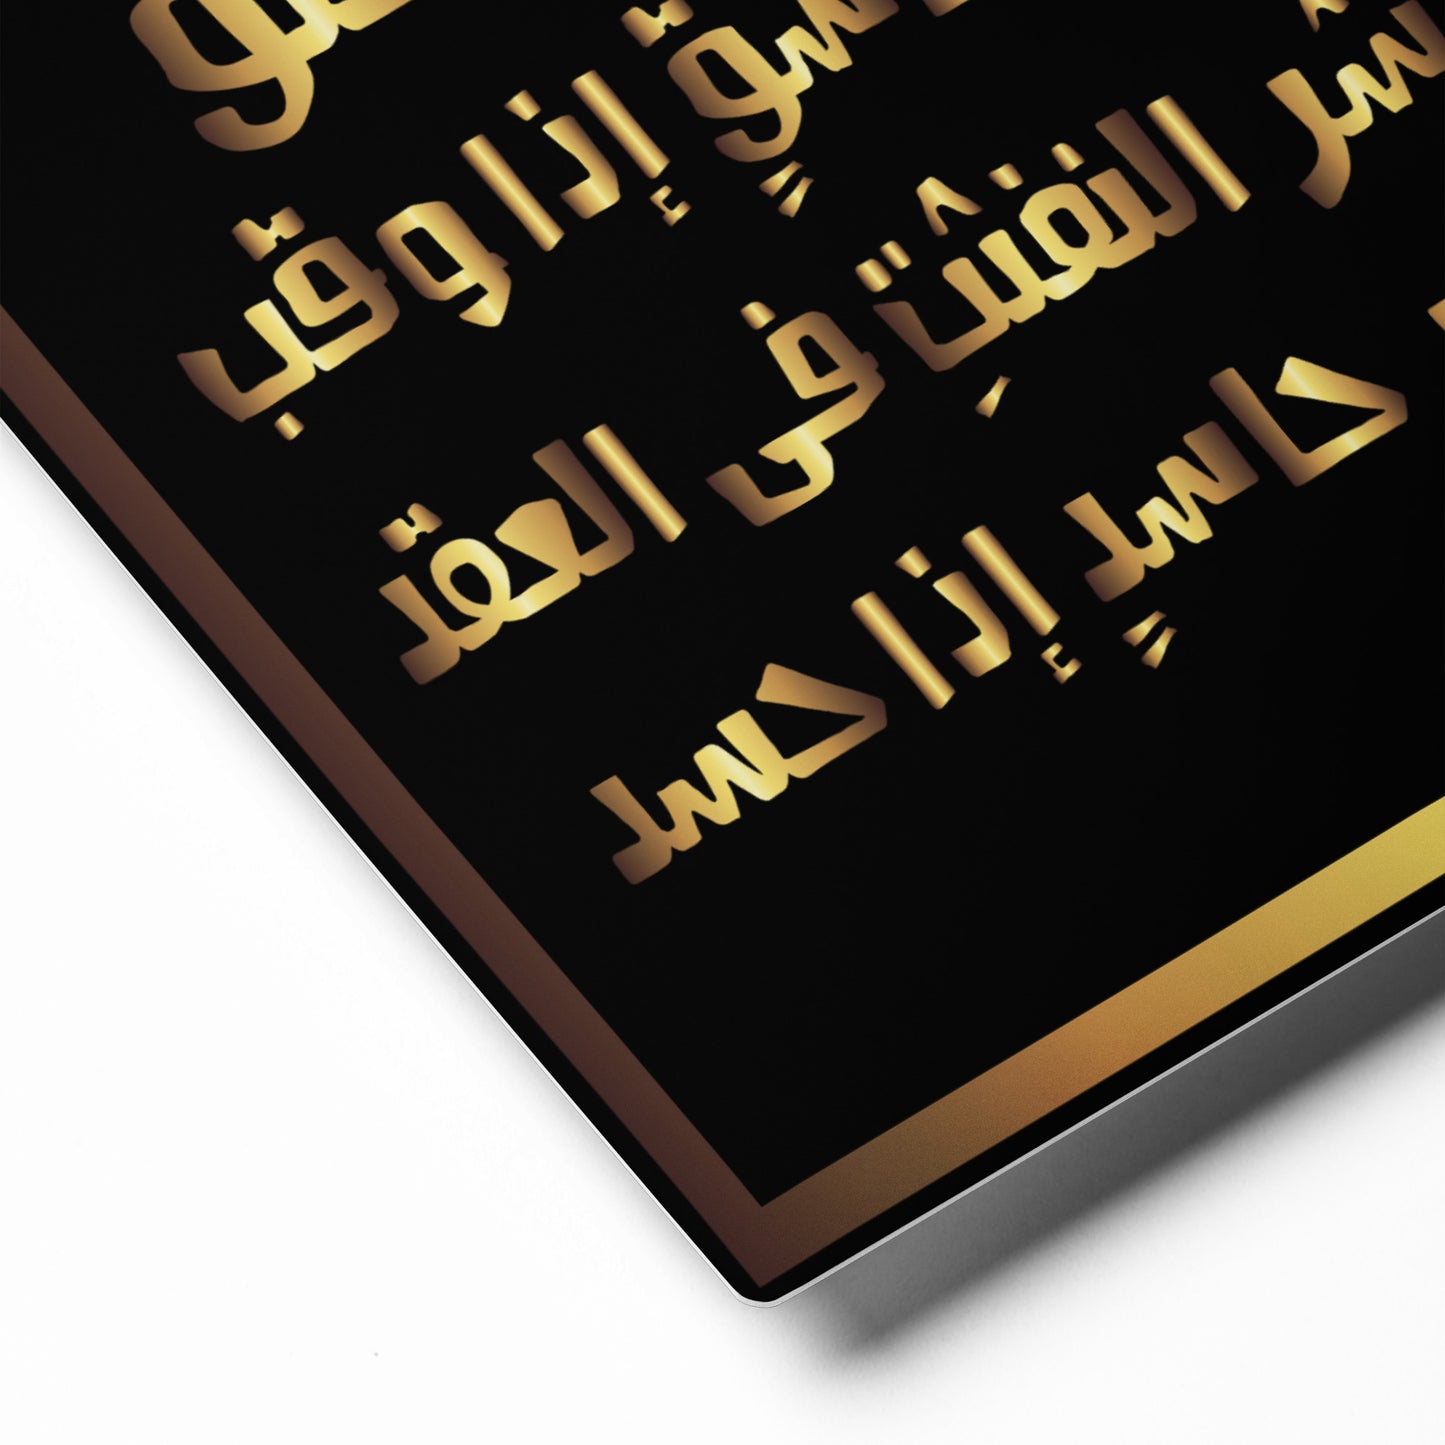 Surat Al-Falaq - Metal prints (8″×10″)